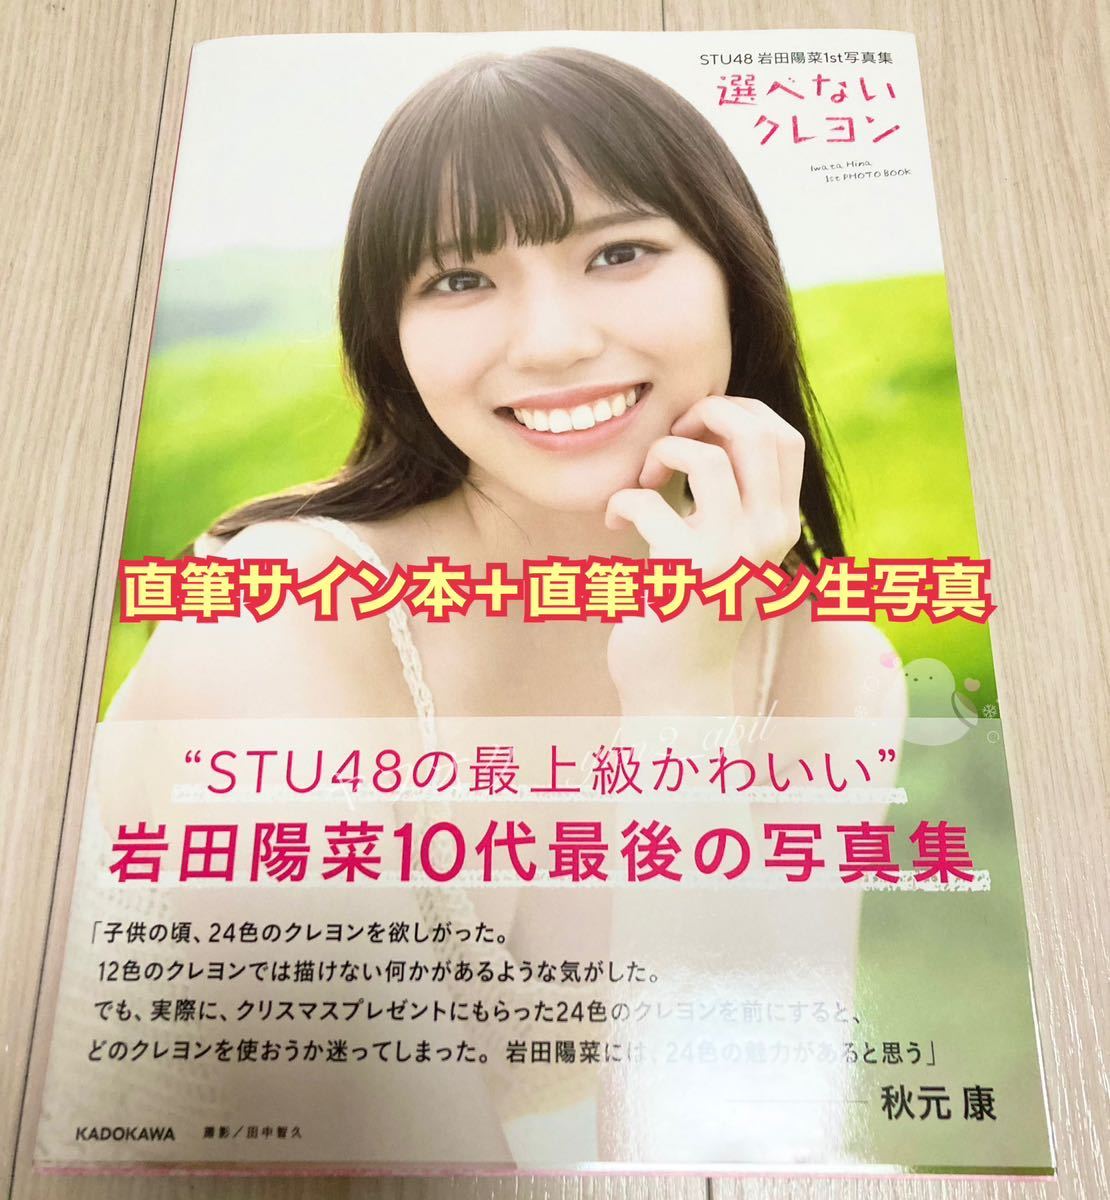 STU48 Iwata .. фотоальбом выбор . нет мелки 